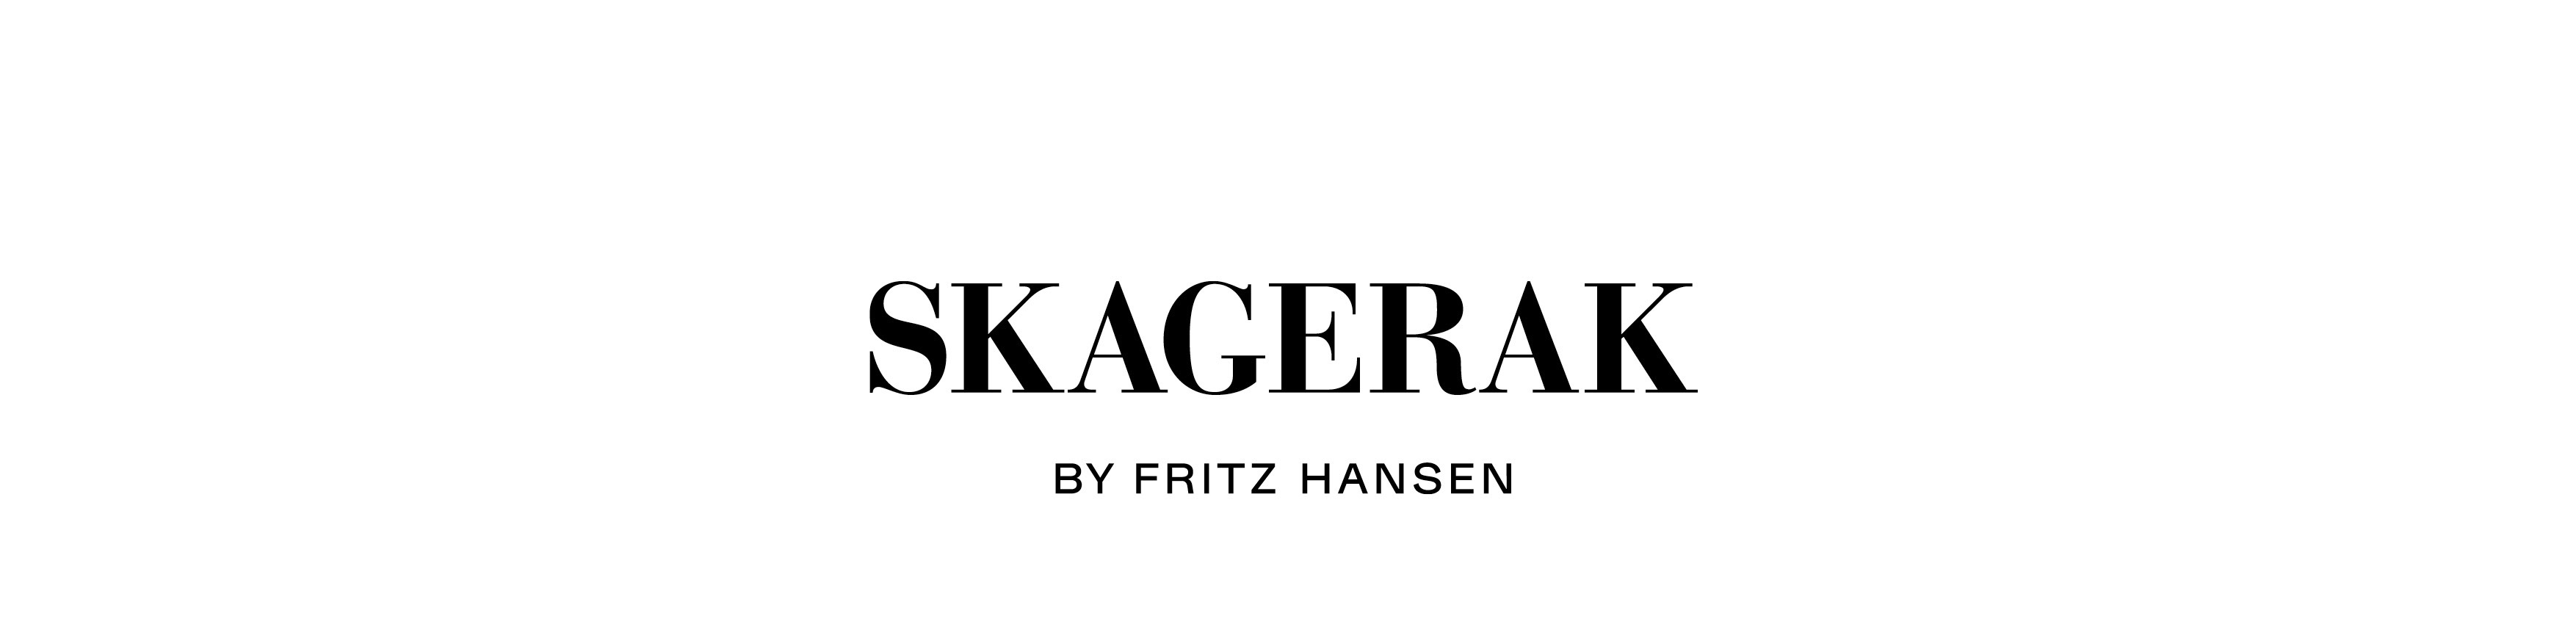 Skagerak by Fritz Hansen